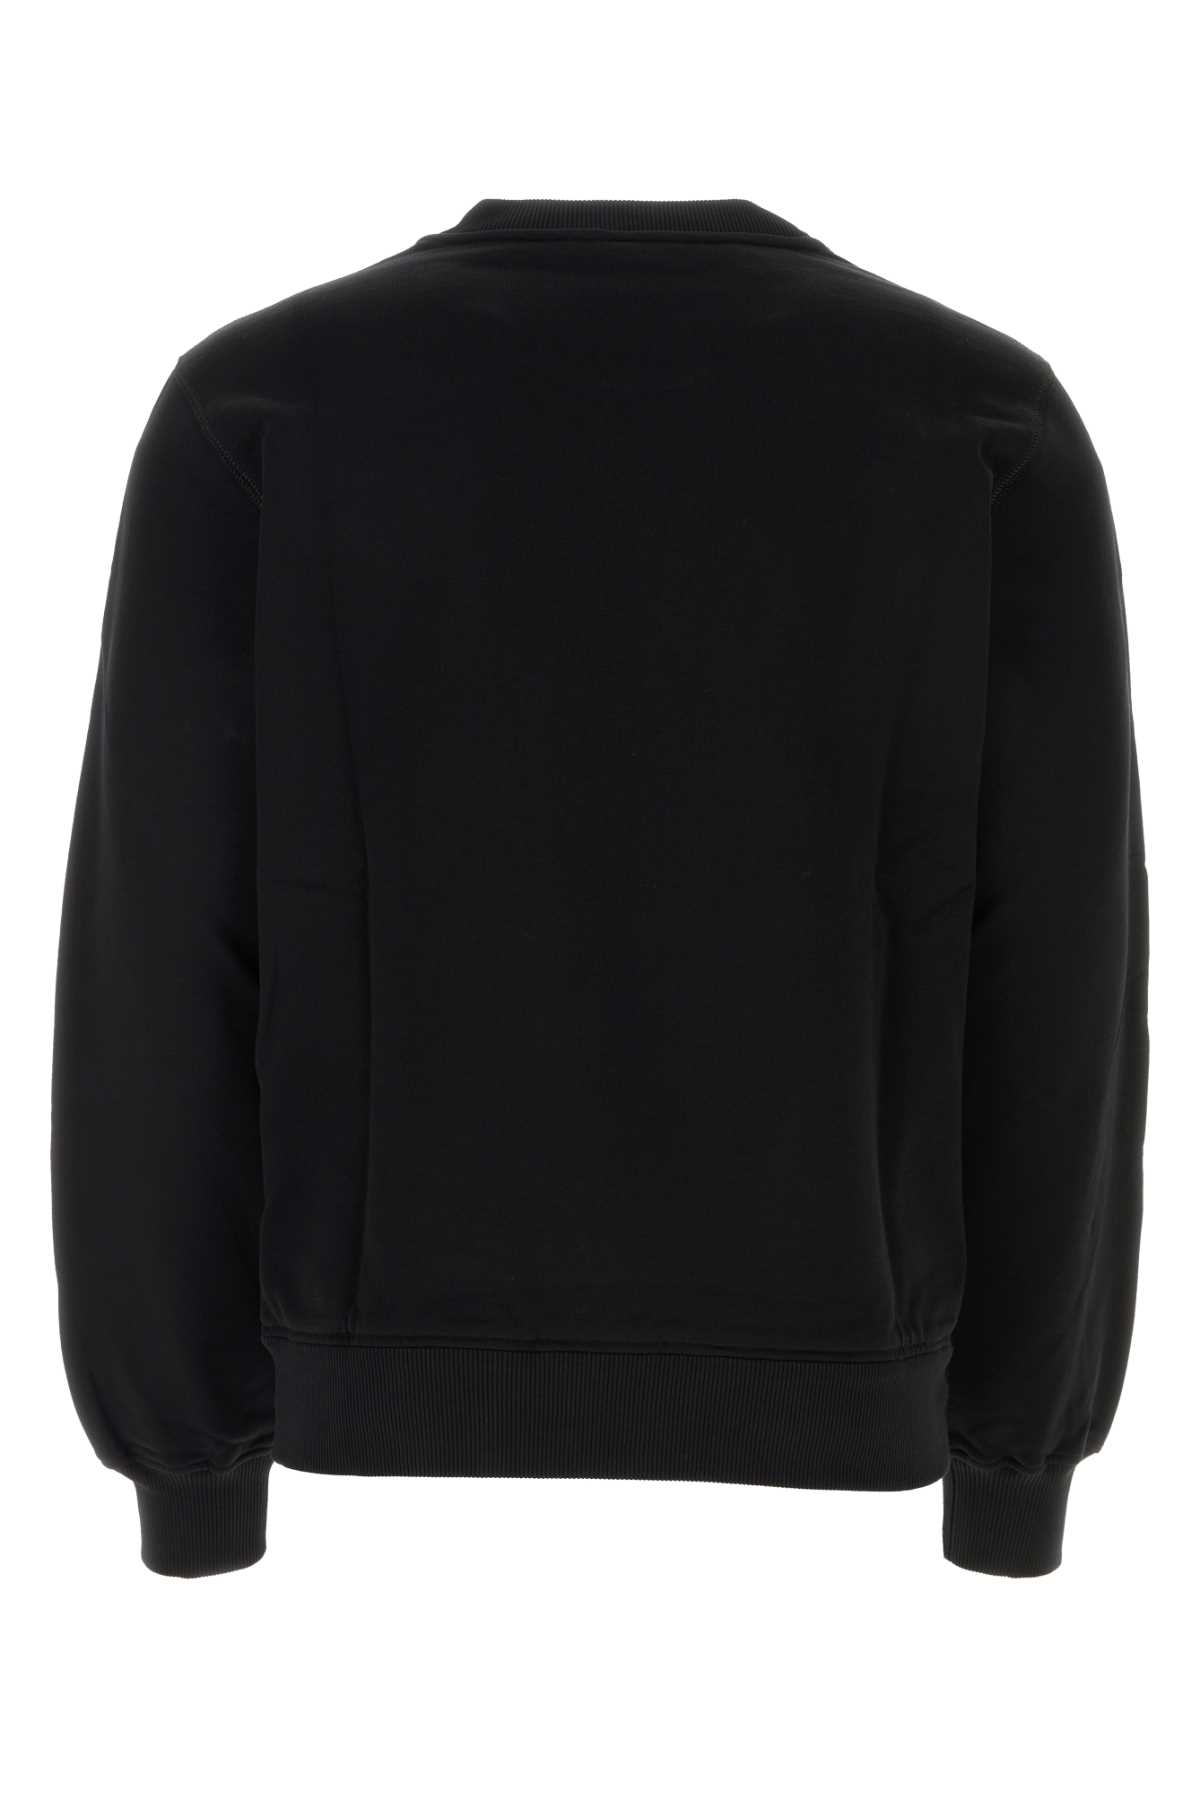 Dolce & Gabbana Black Cotton Sweatshirt In N0000